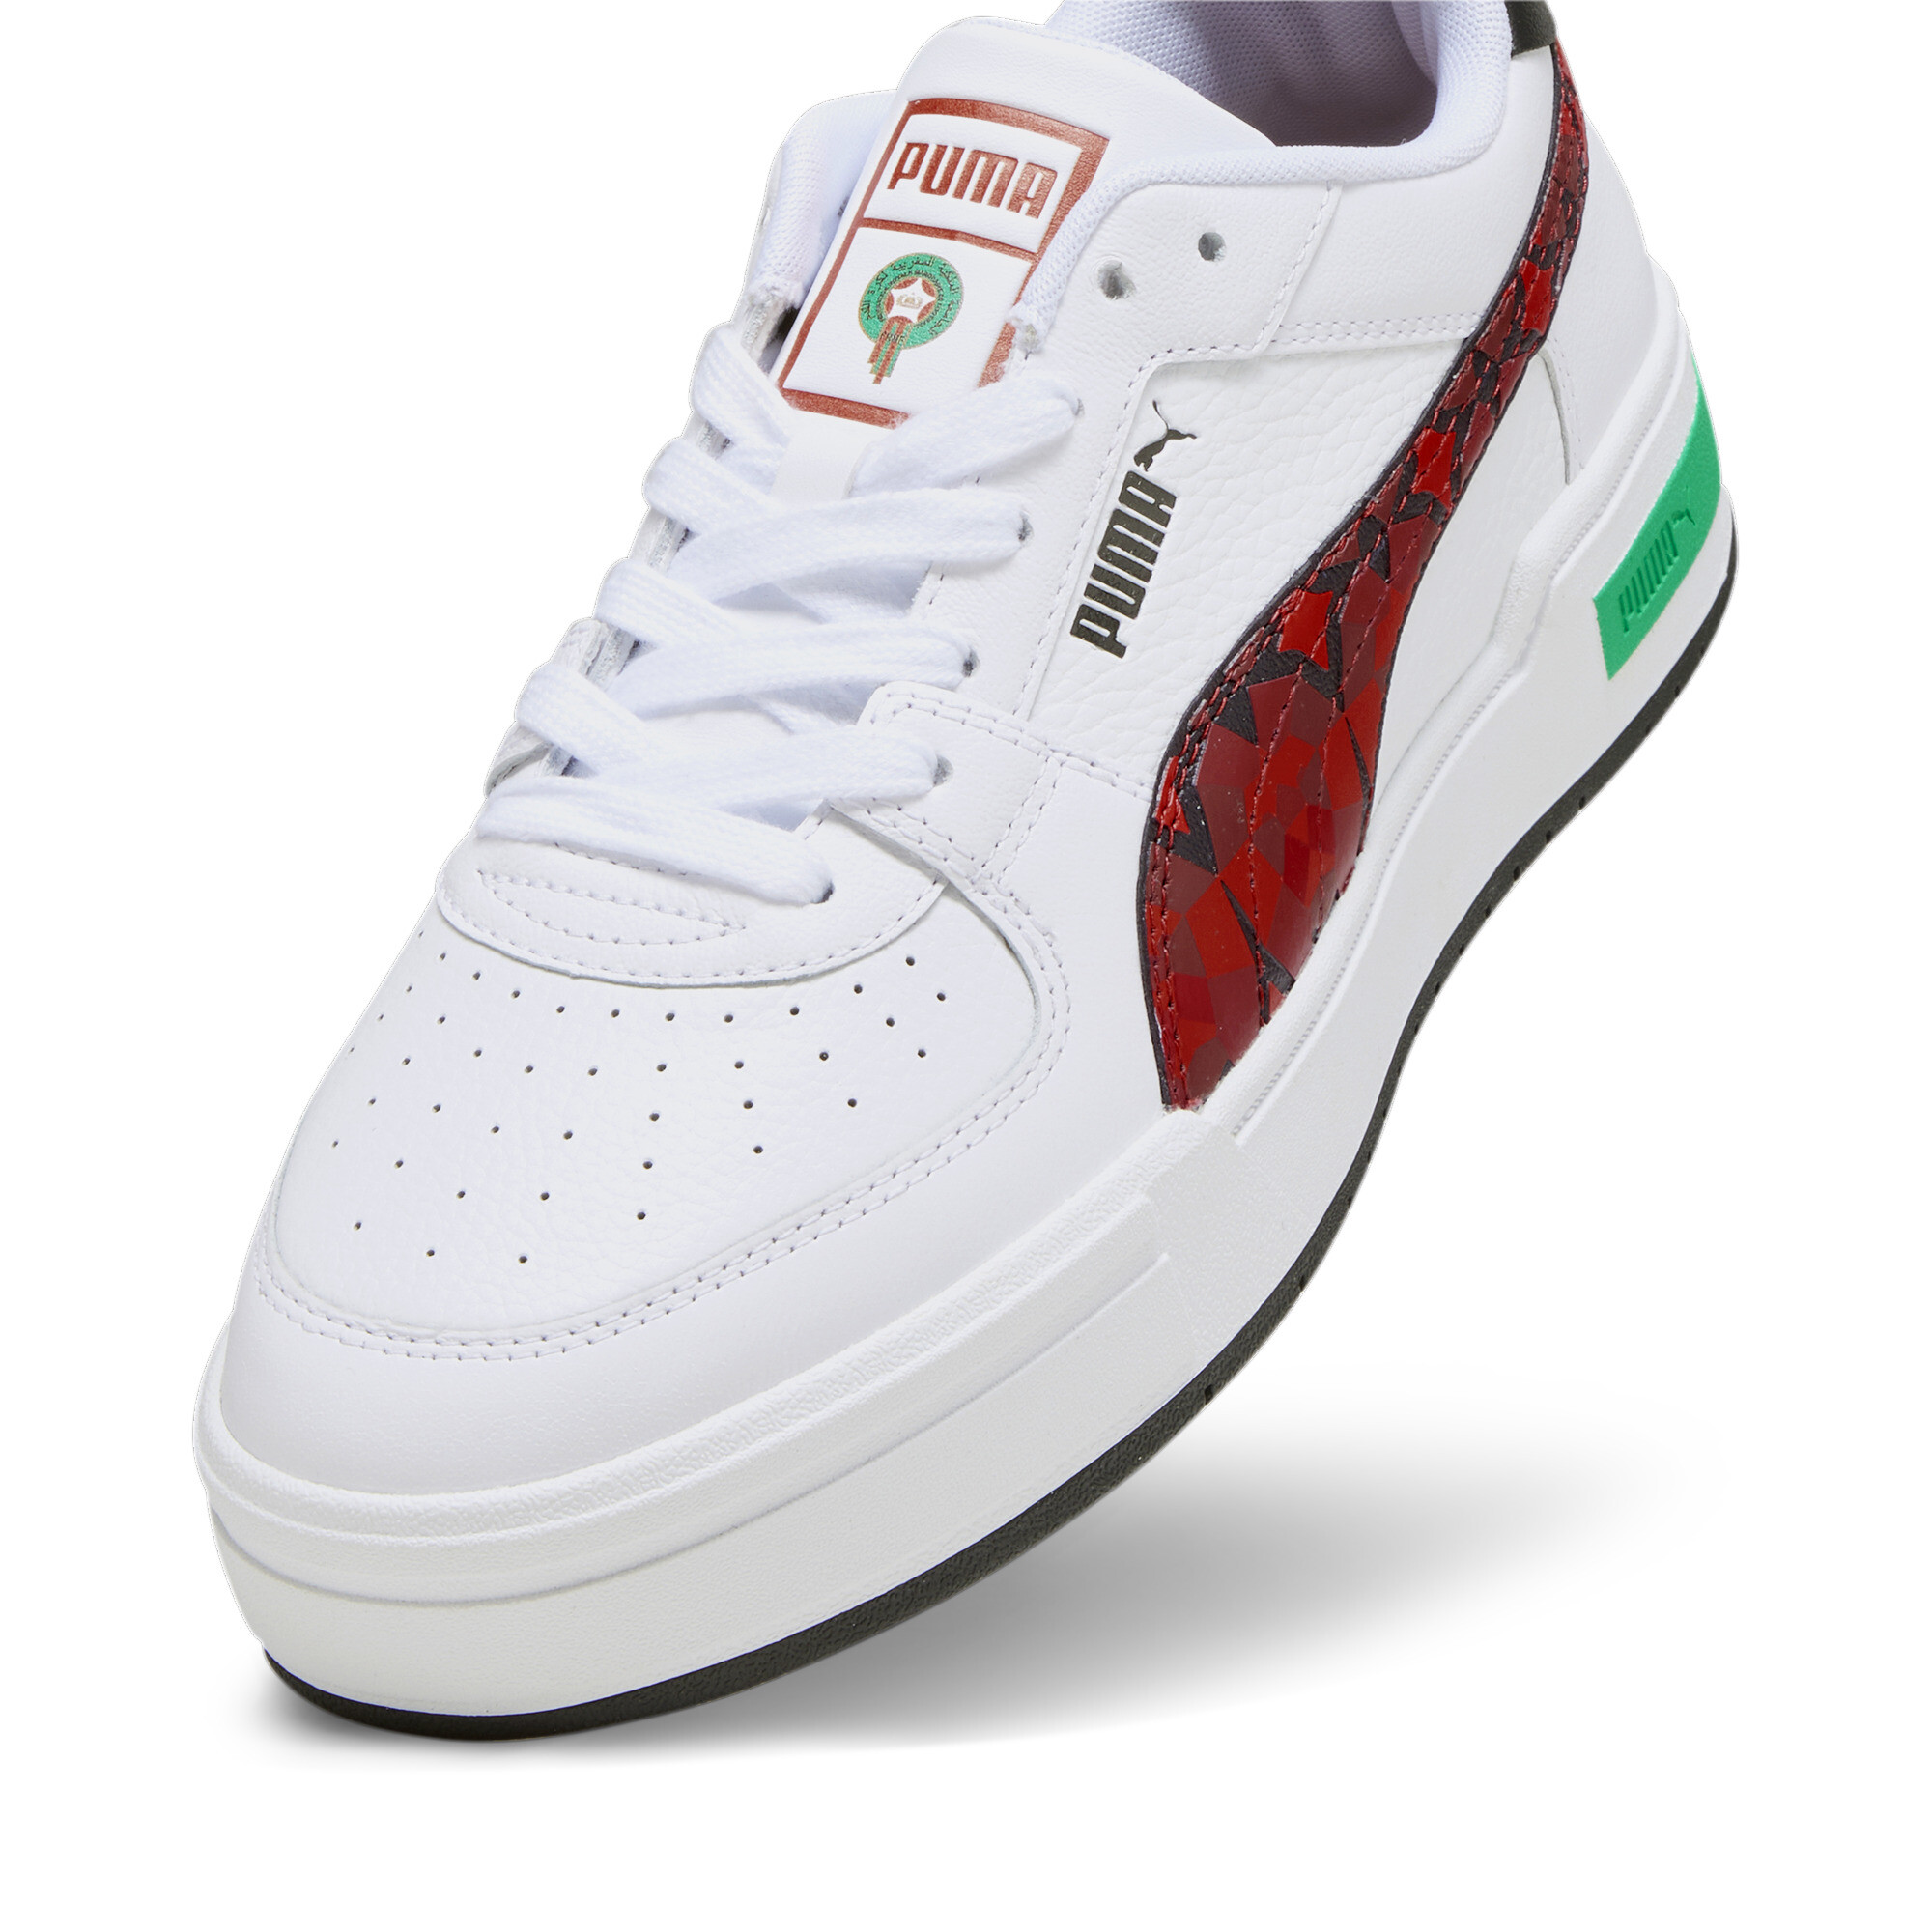 Men's PUMA CA Pro Morocco Football Sneakers In White, Size EU 47